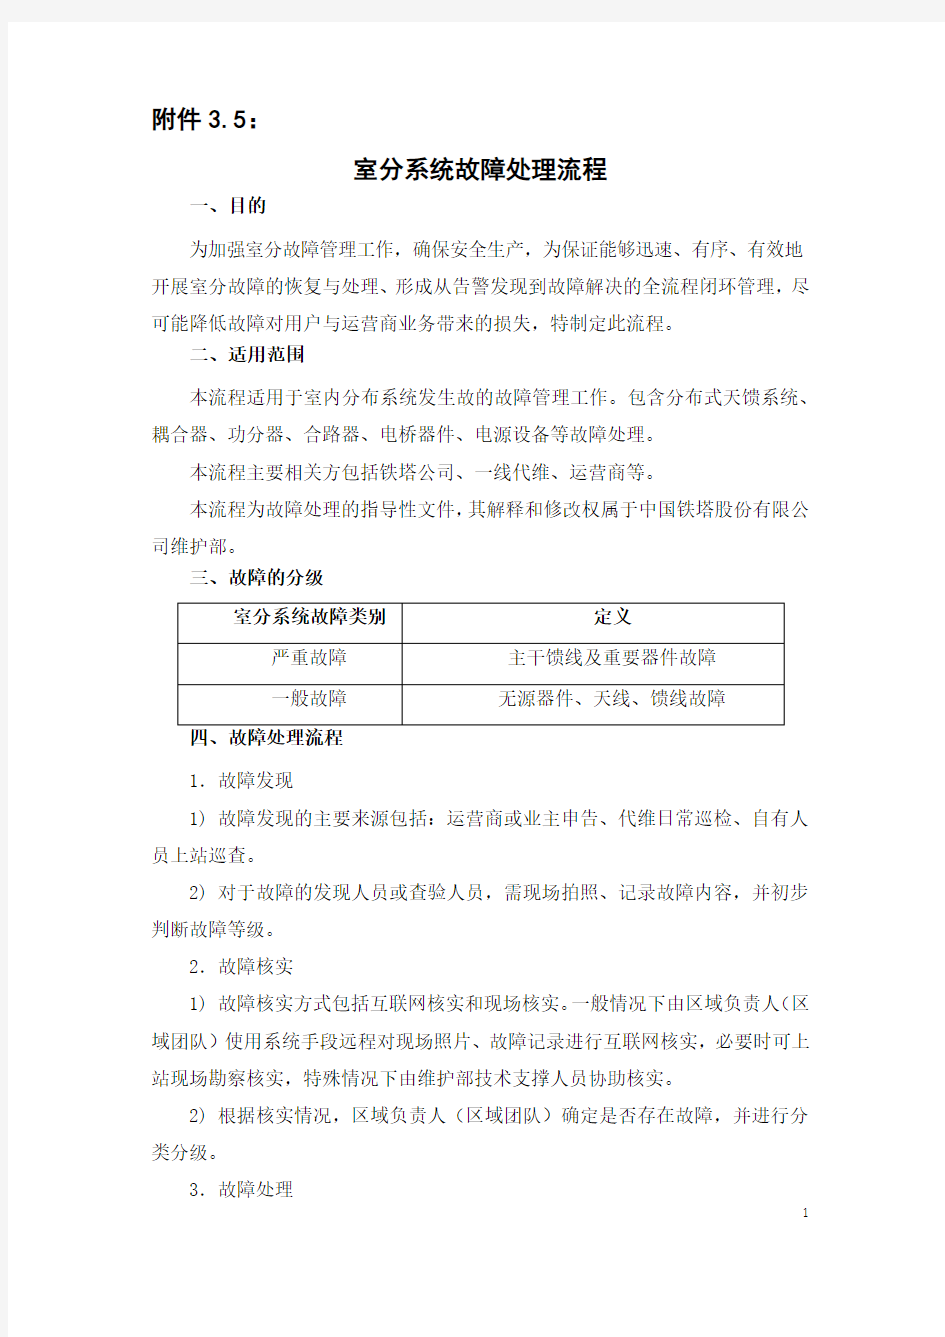 中国铁塔室分系统故障处理流程